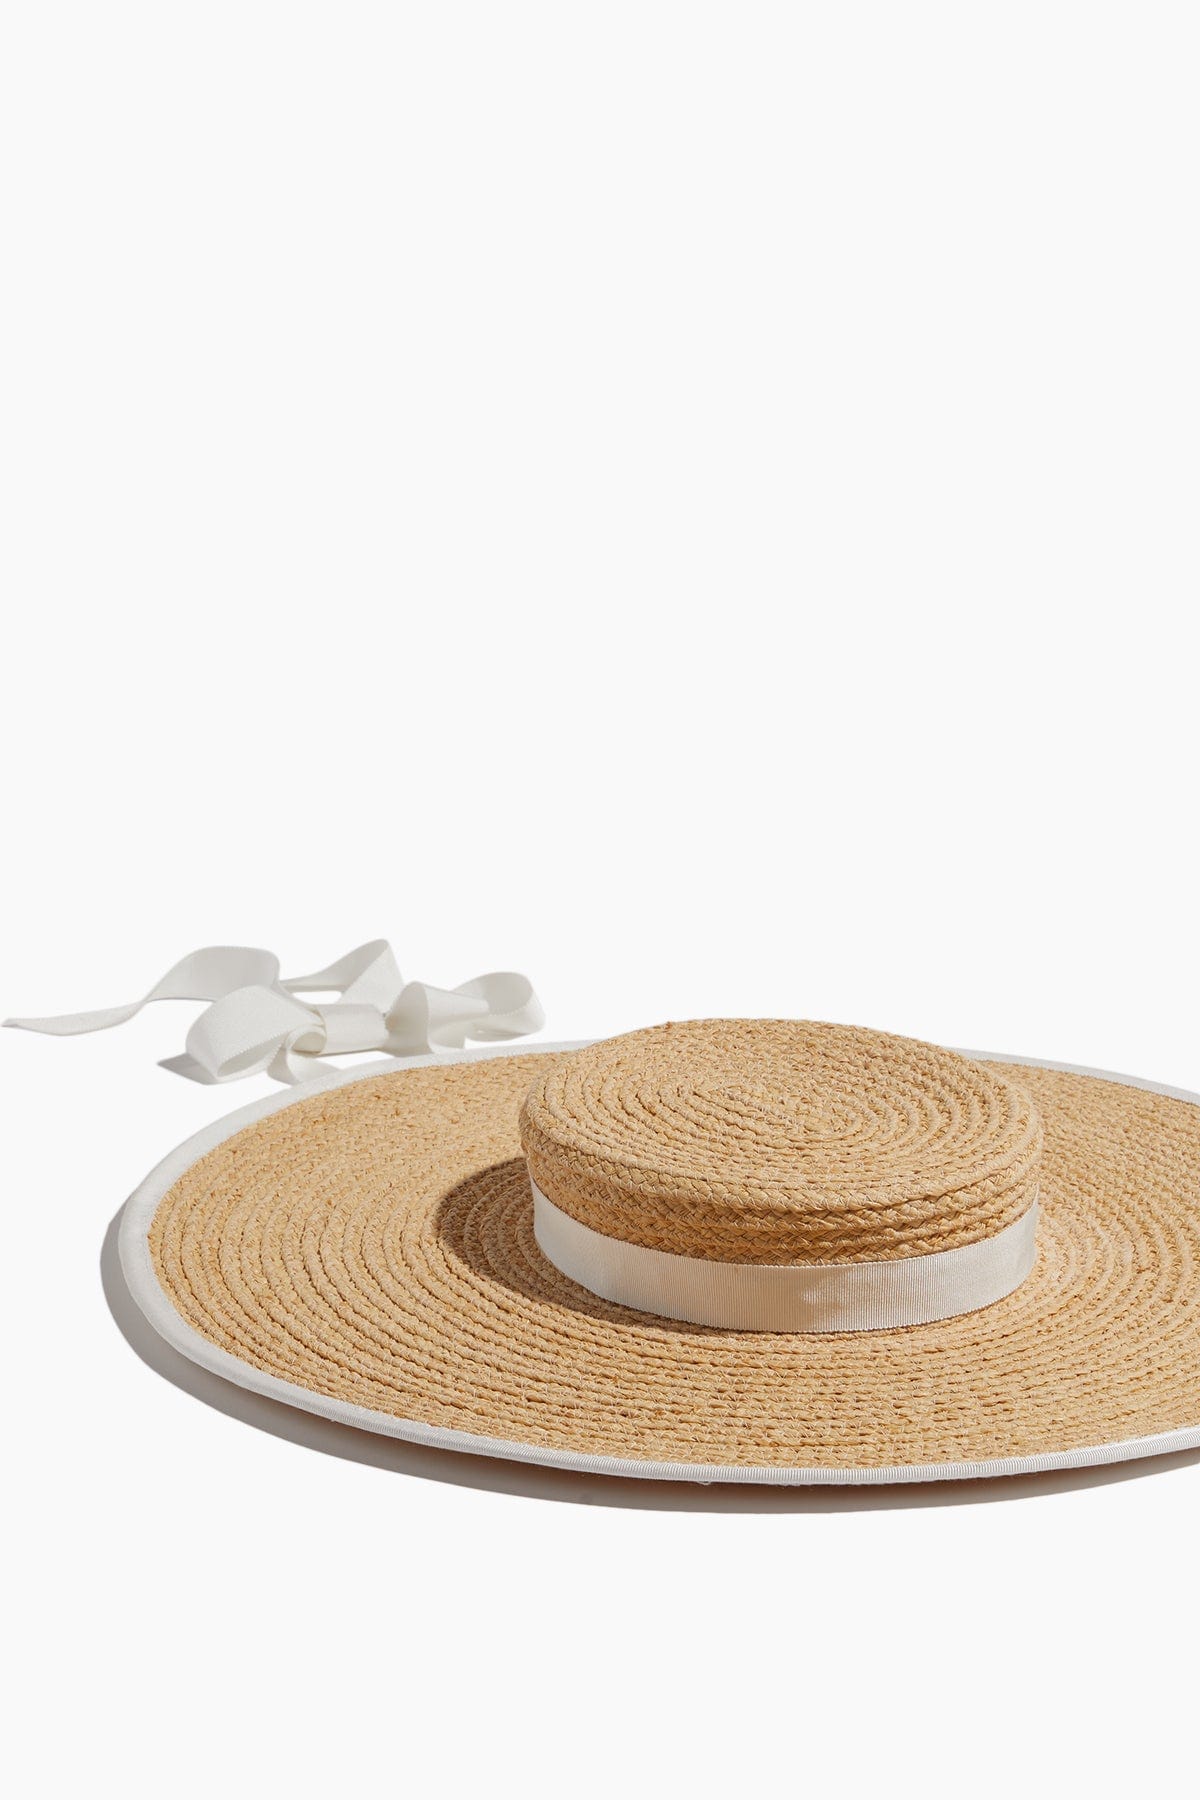 Gigi Burris Hats Claiborne Hat in Natural/Ivory Gigi Burris Claiborne Hat in Natural/Ivory